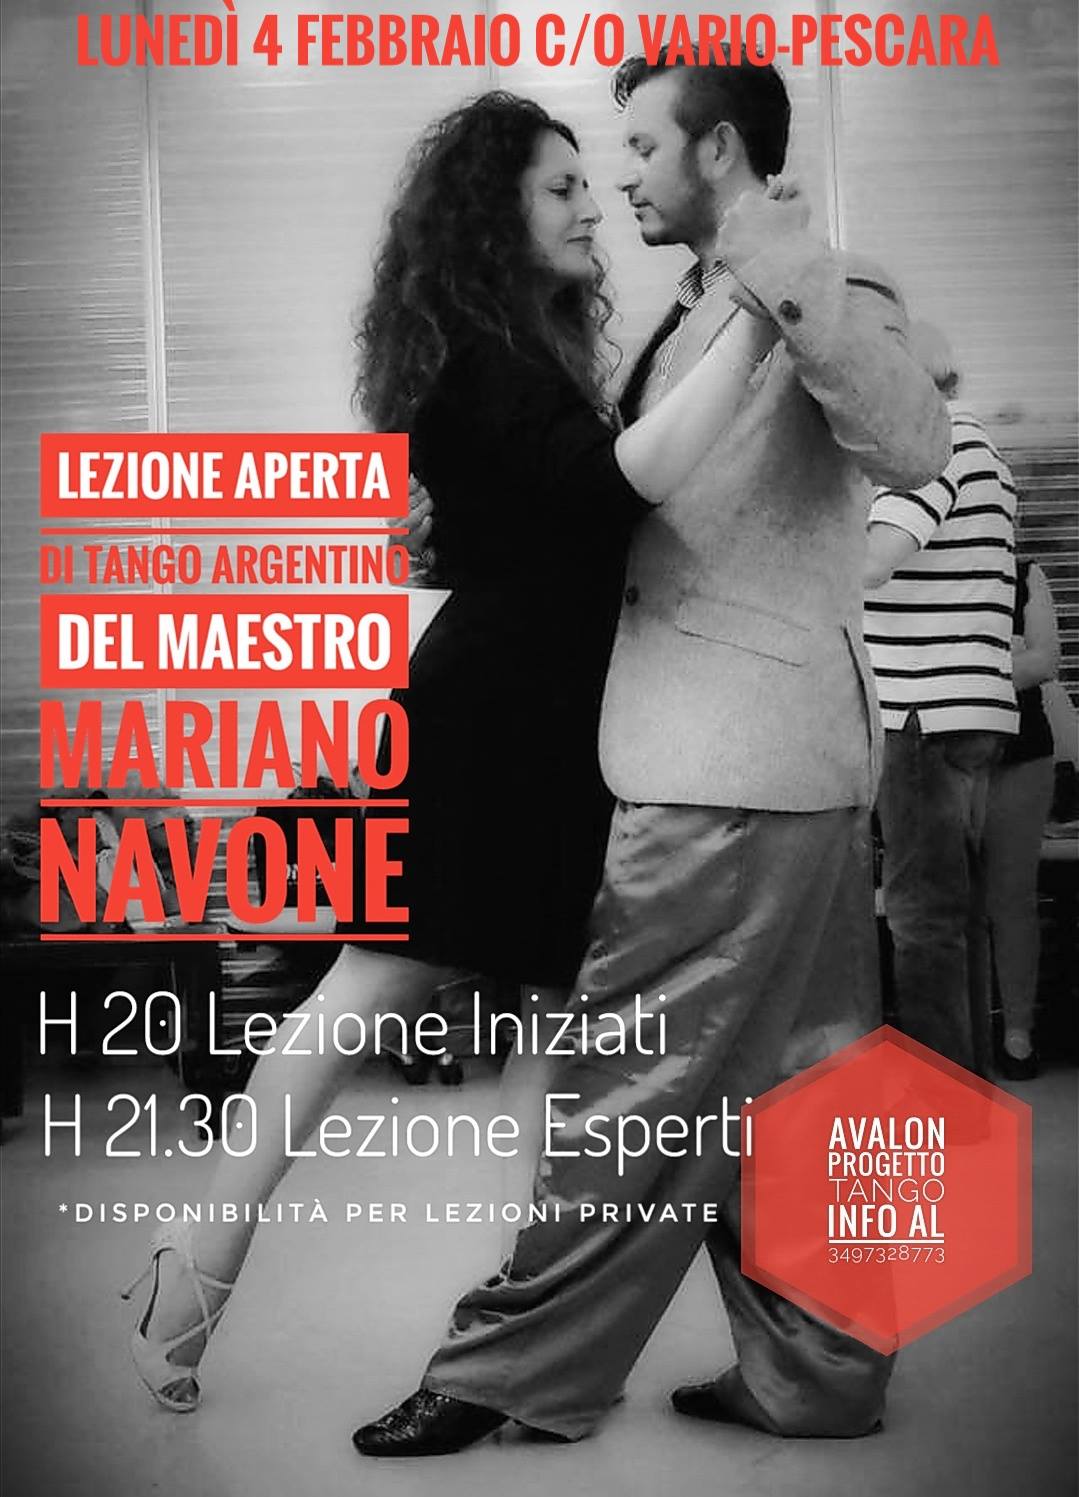 Lunedì 4 febbraio la lezione di tango argentino del Maestro Mariano Navone - avalon progetto tango